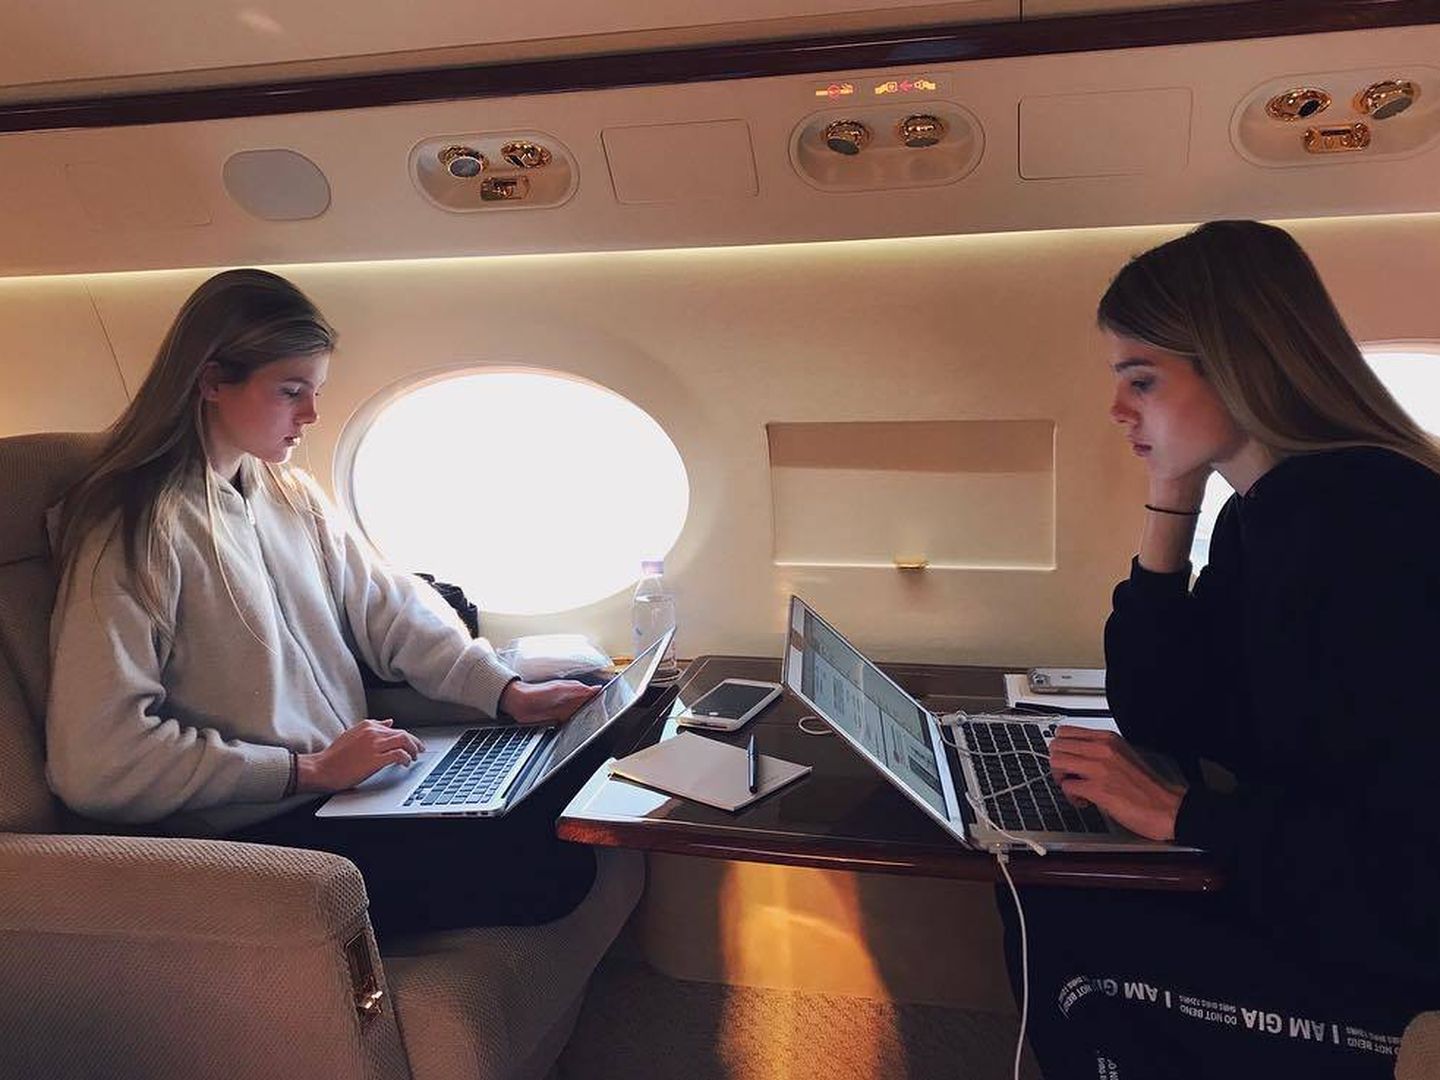 Las dos jóvenes compartiendo un momento en el avión. (Instagram)